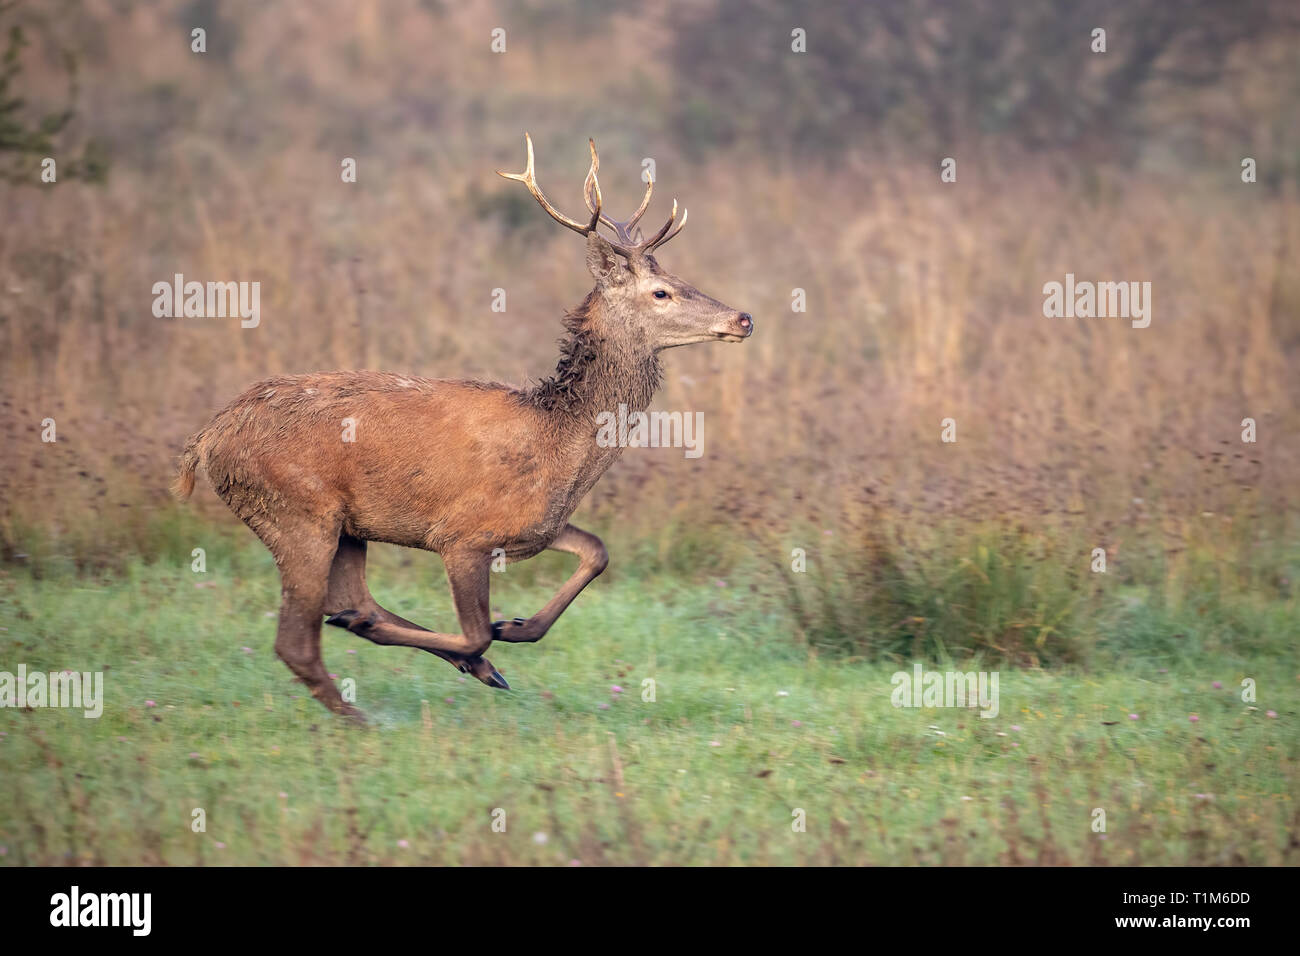 Red Deer, Cervus elaphus, stag sprint le long d'un pré à l'automne, avec arrière-plan flou. L'exécution d'animaux sauvages dans la nature. Banque D'Images